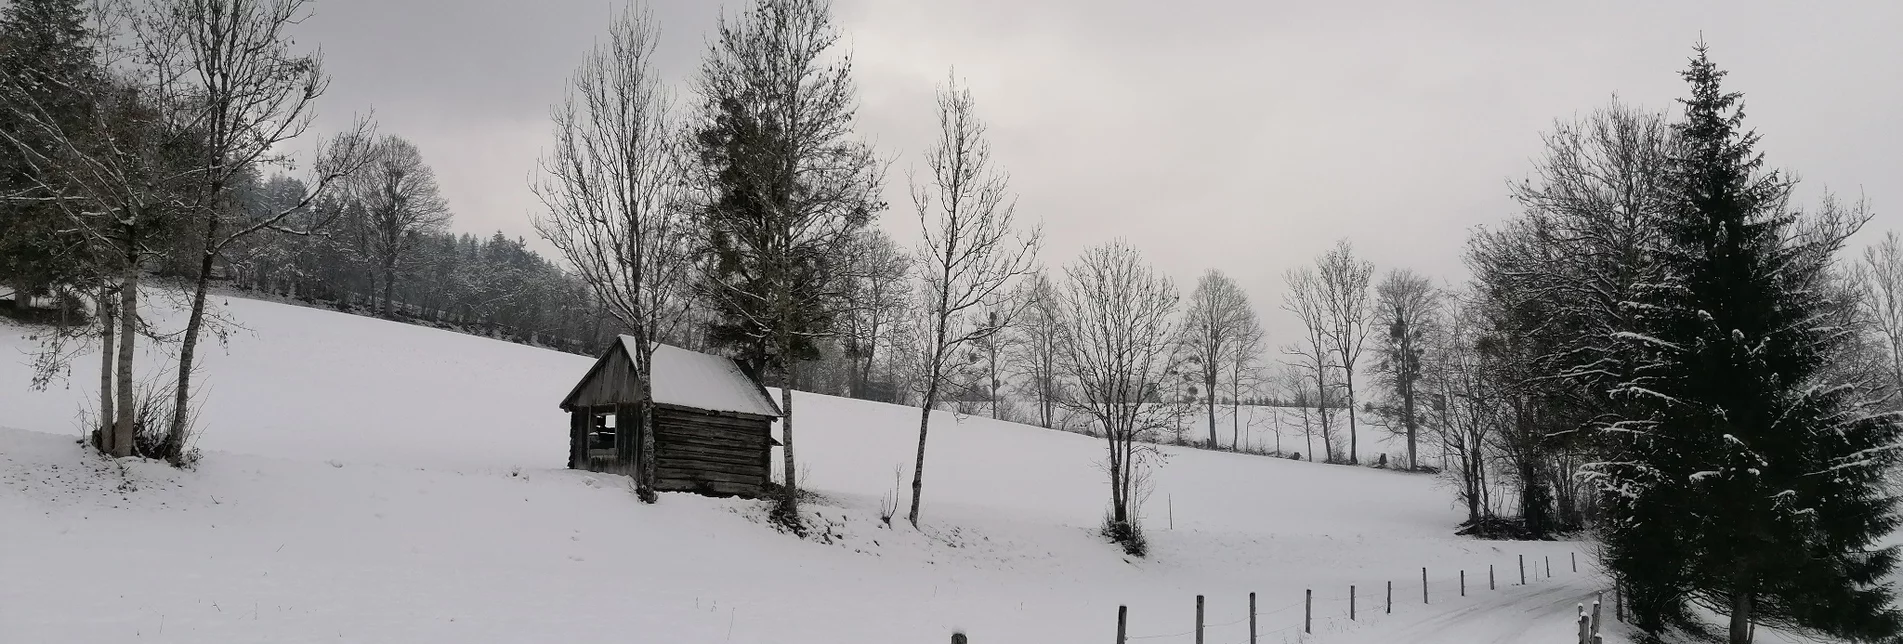 Winterwandern Raumbergweg - Touren-Impression #1 | © Erlebnisregion Schladming-Dachstein